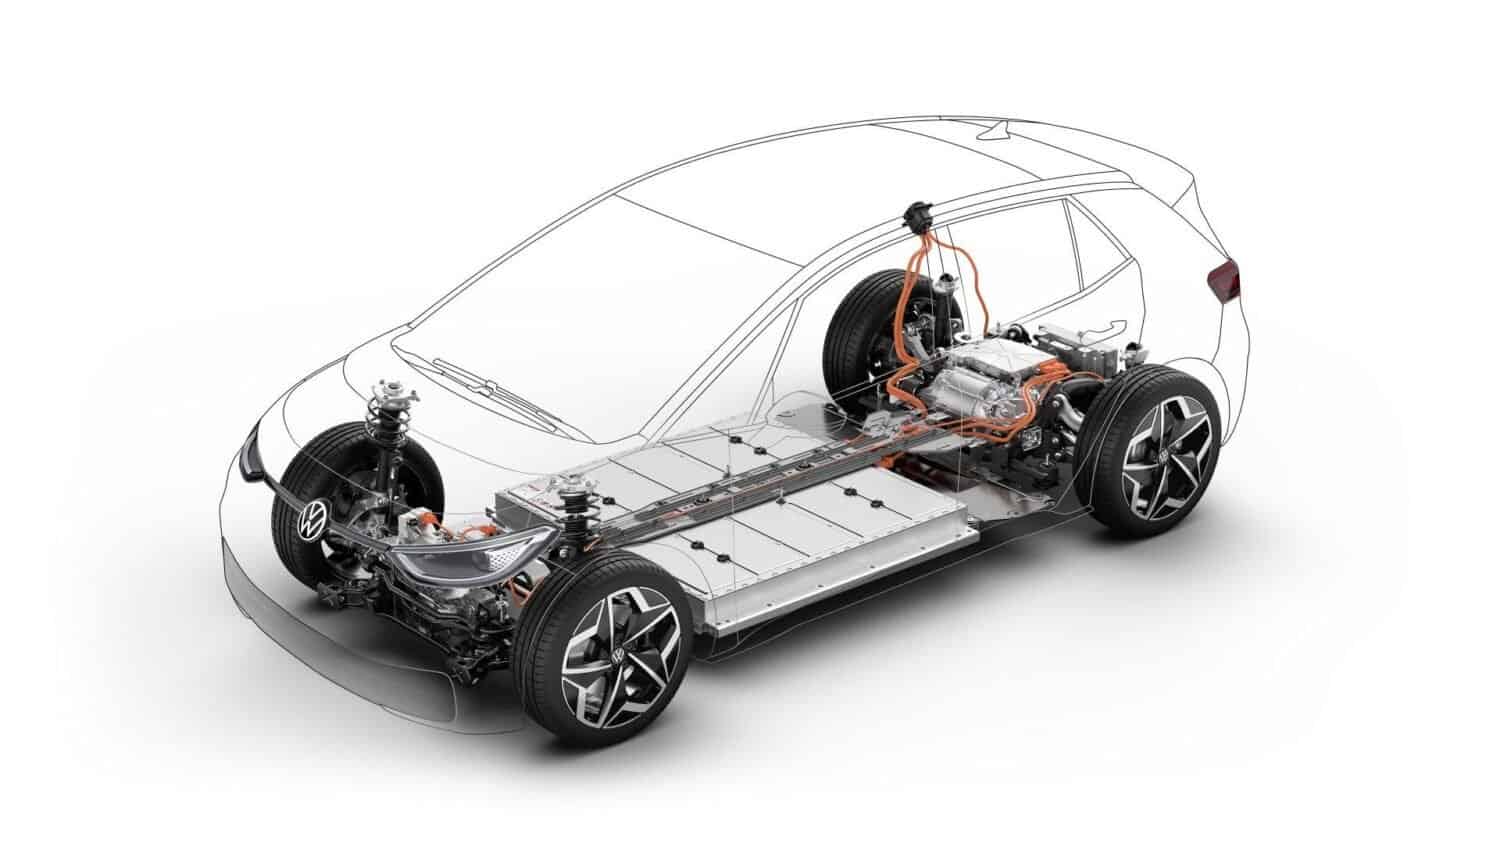 VW setzt auf MEB-Plattform im Motorsport